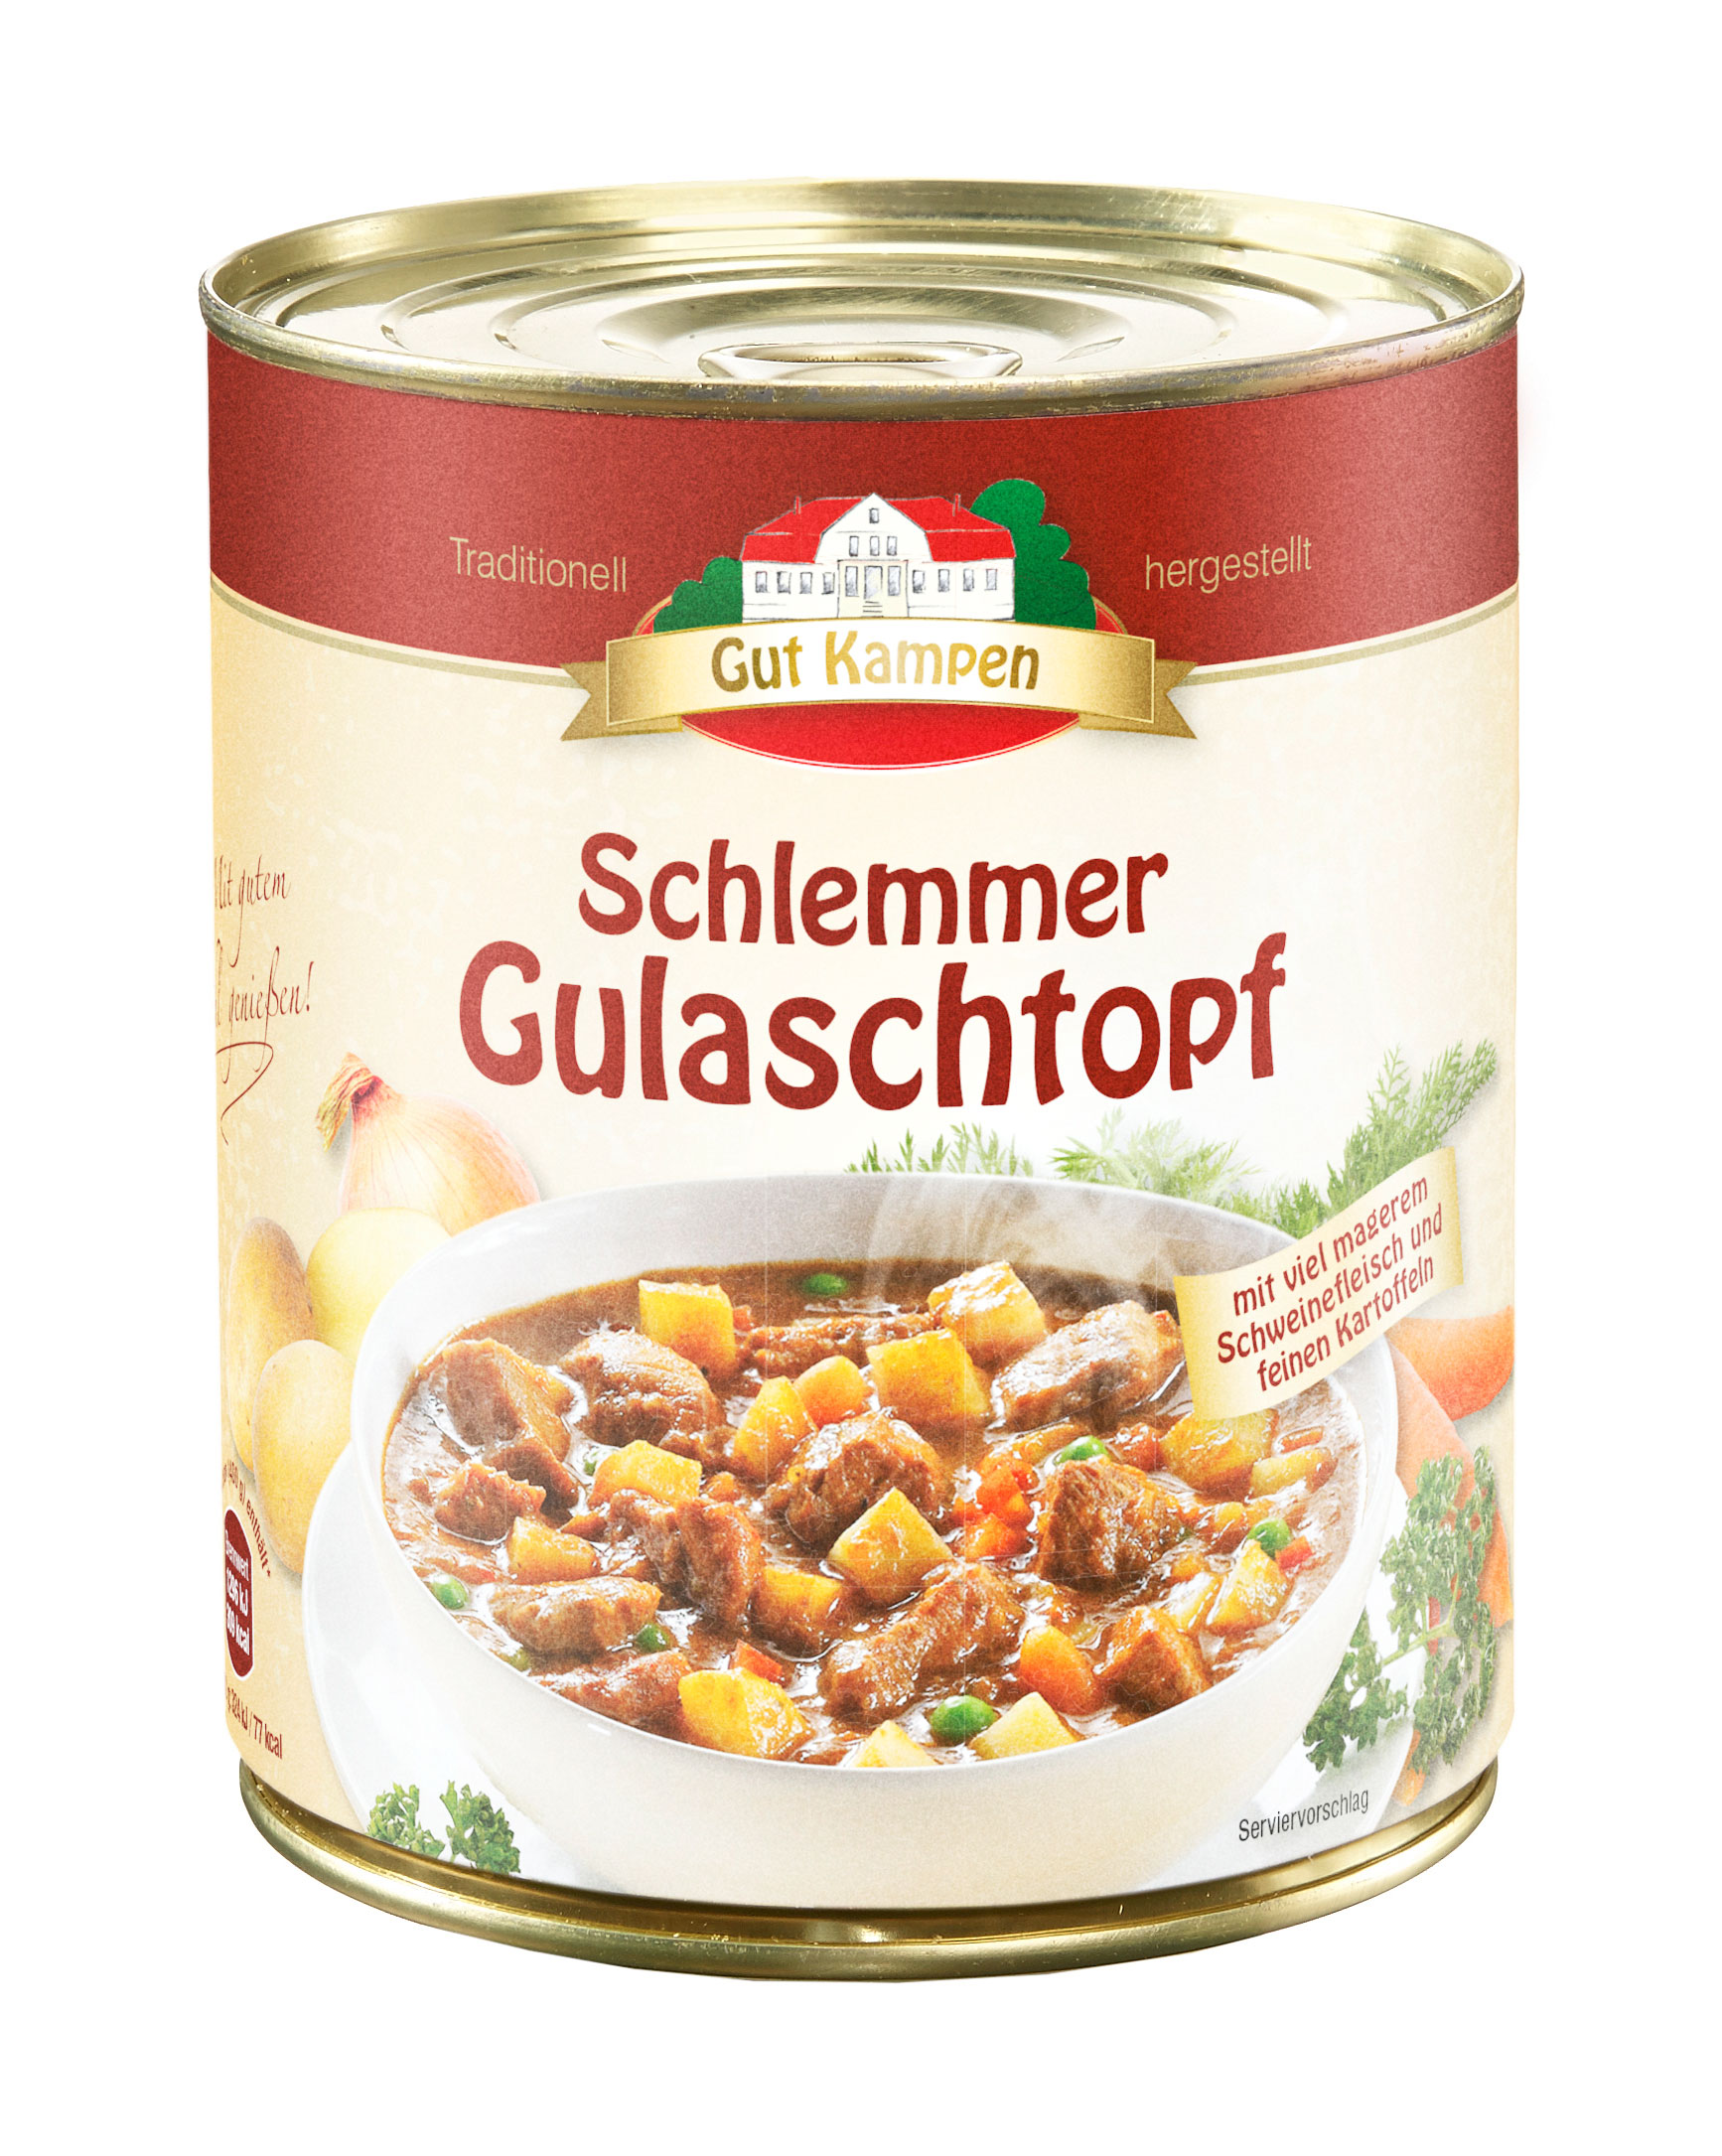 Schlemmer-Gulaschtopf